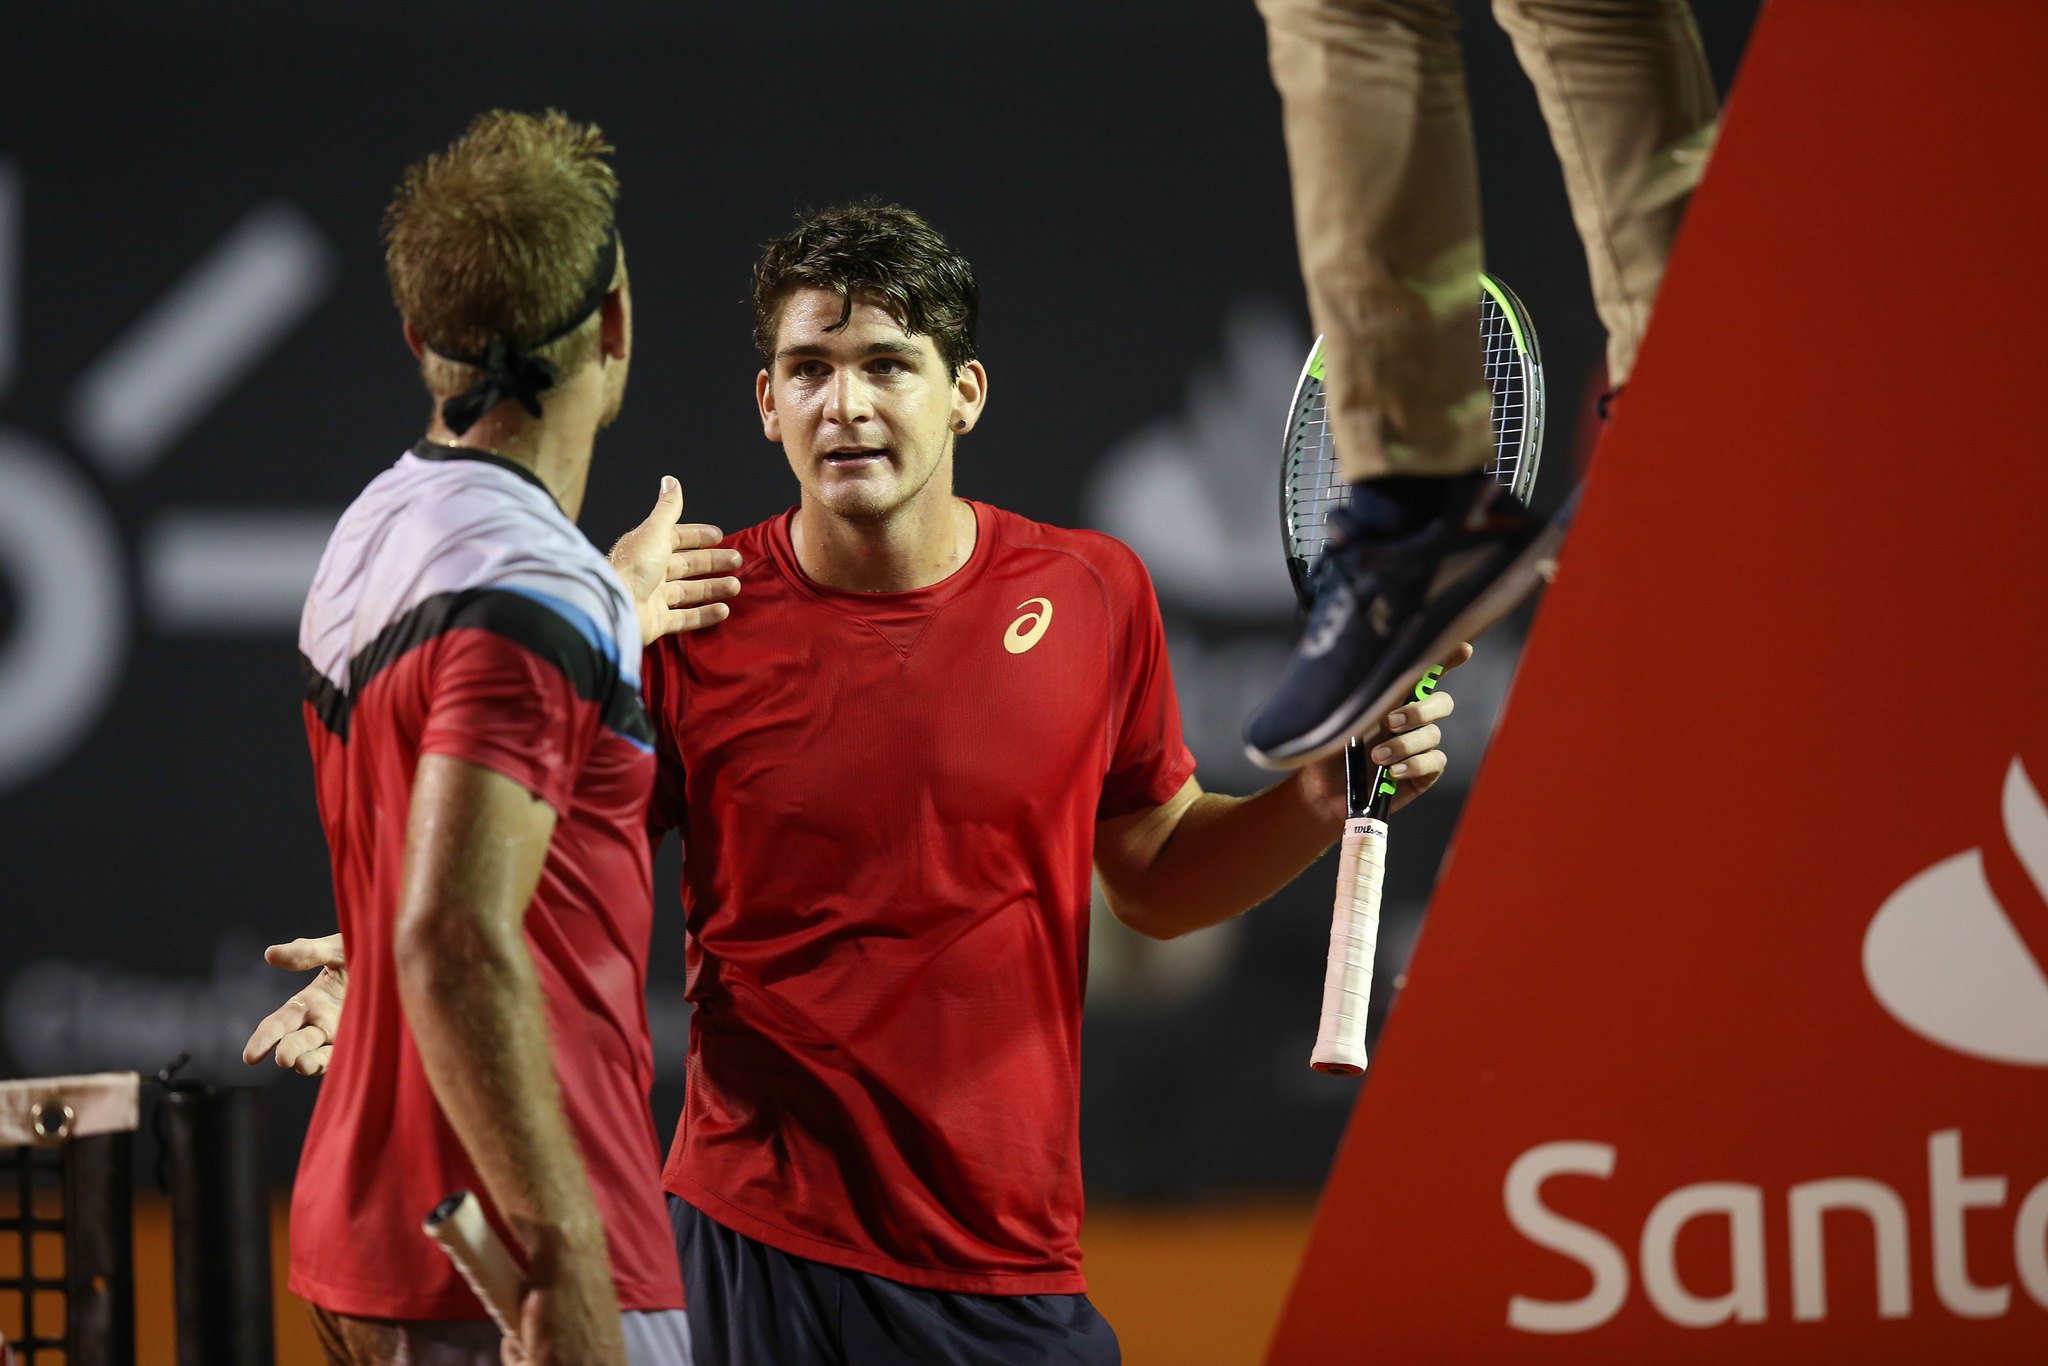 Na 1ª noite do Rio Open, clima esquenta entre torcida e tenista espanhol